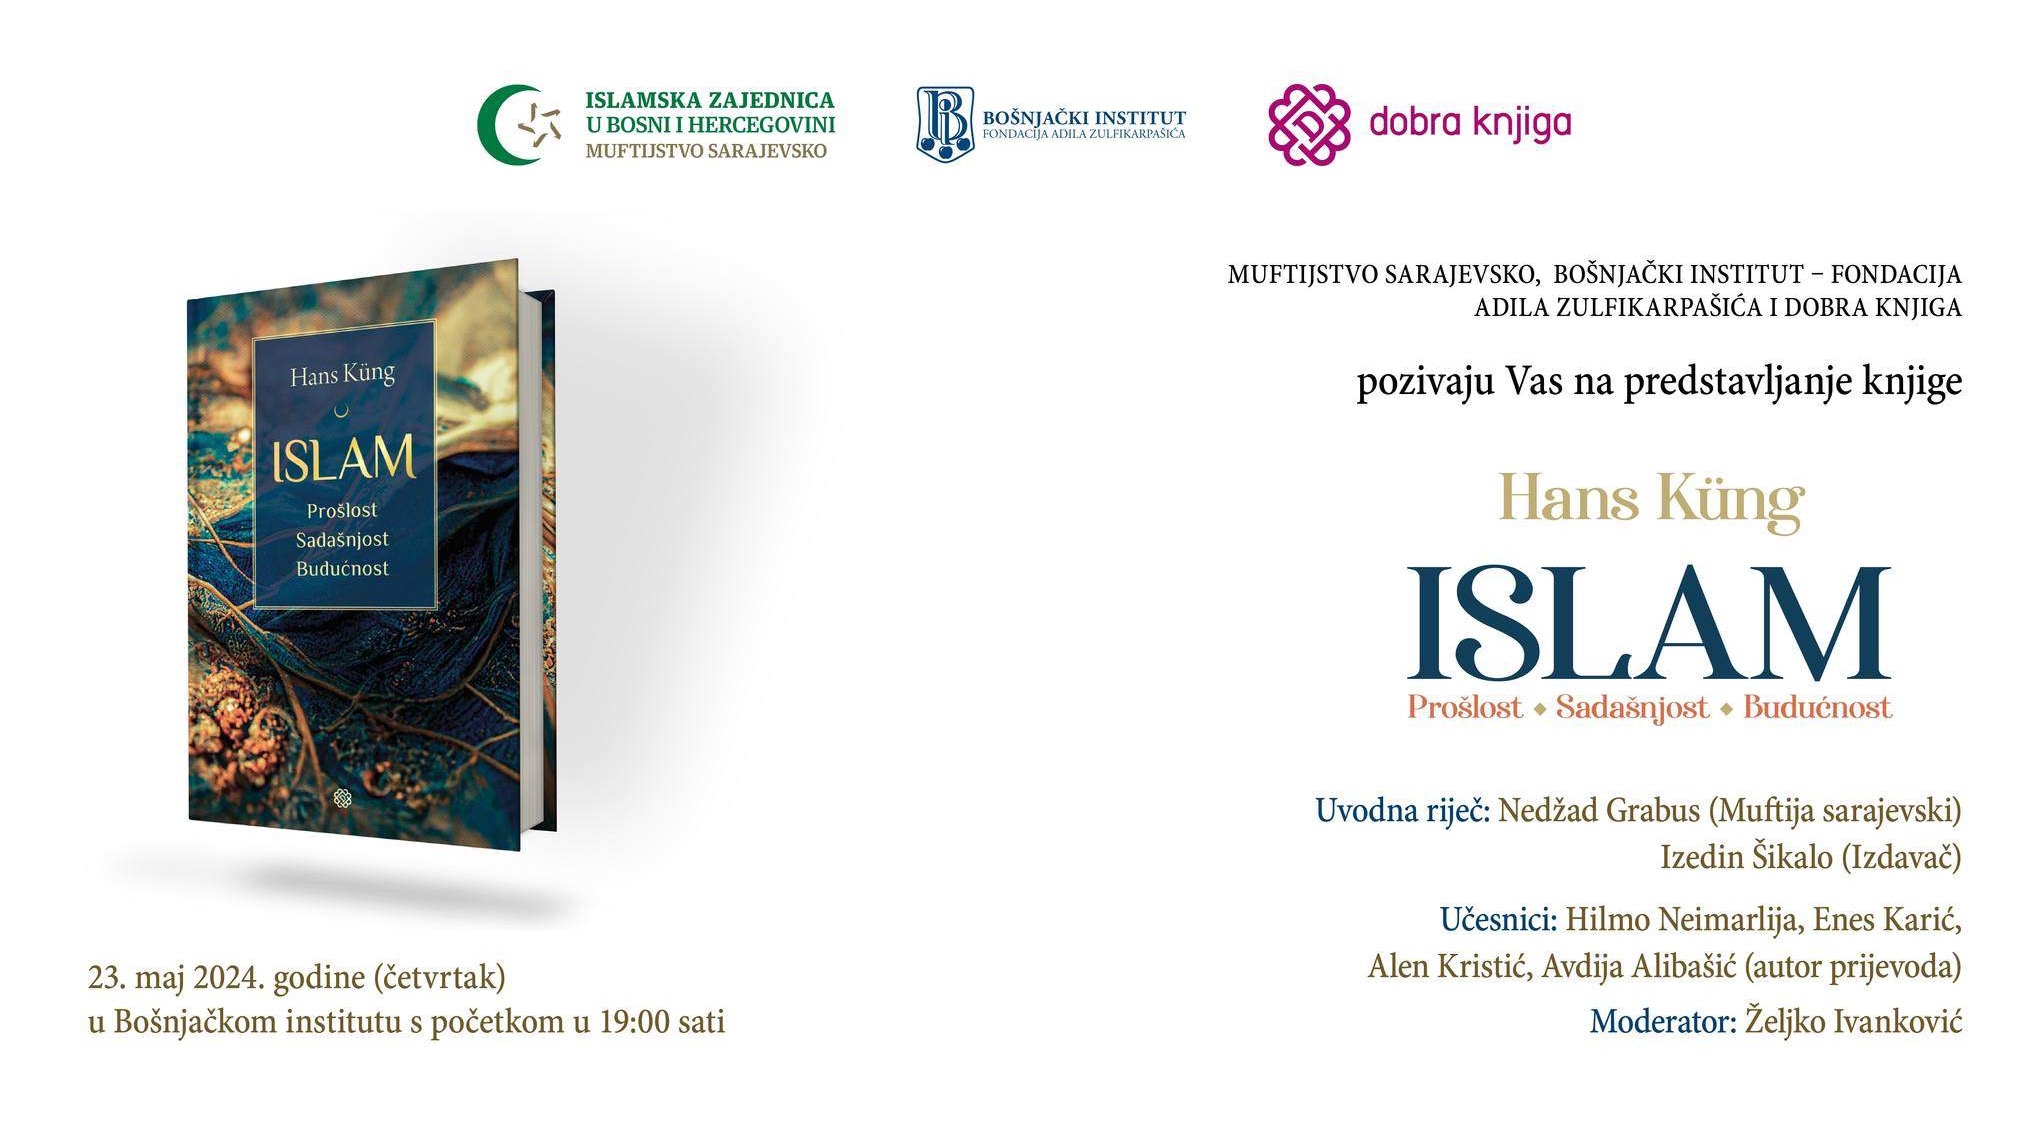 Promocija knjige "Islam: prošlost, sadašnjost, budućnost" 23. maja